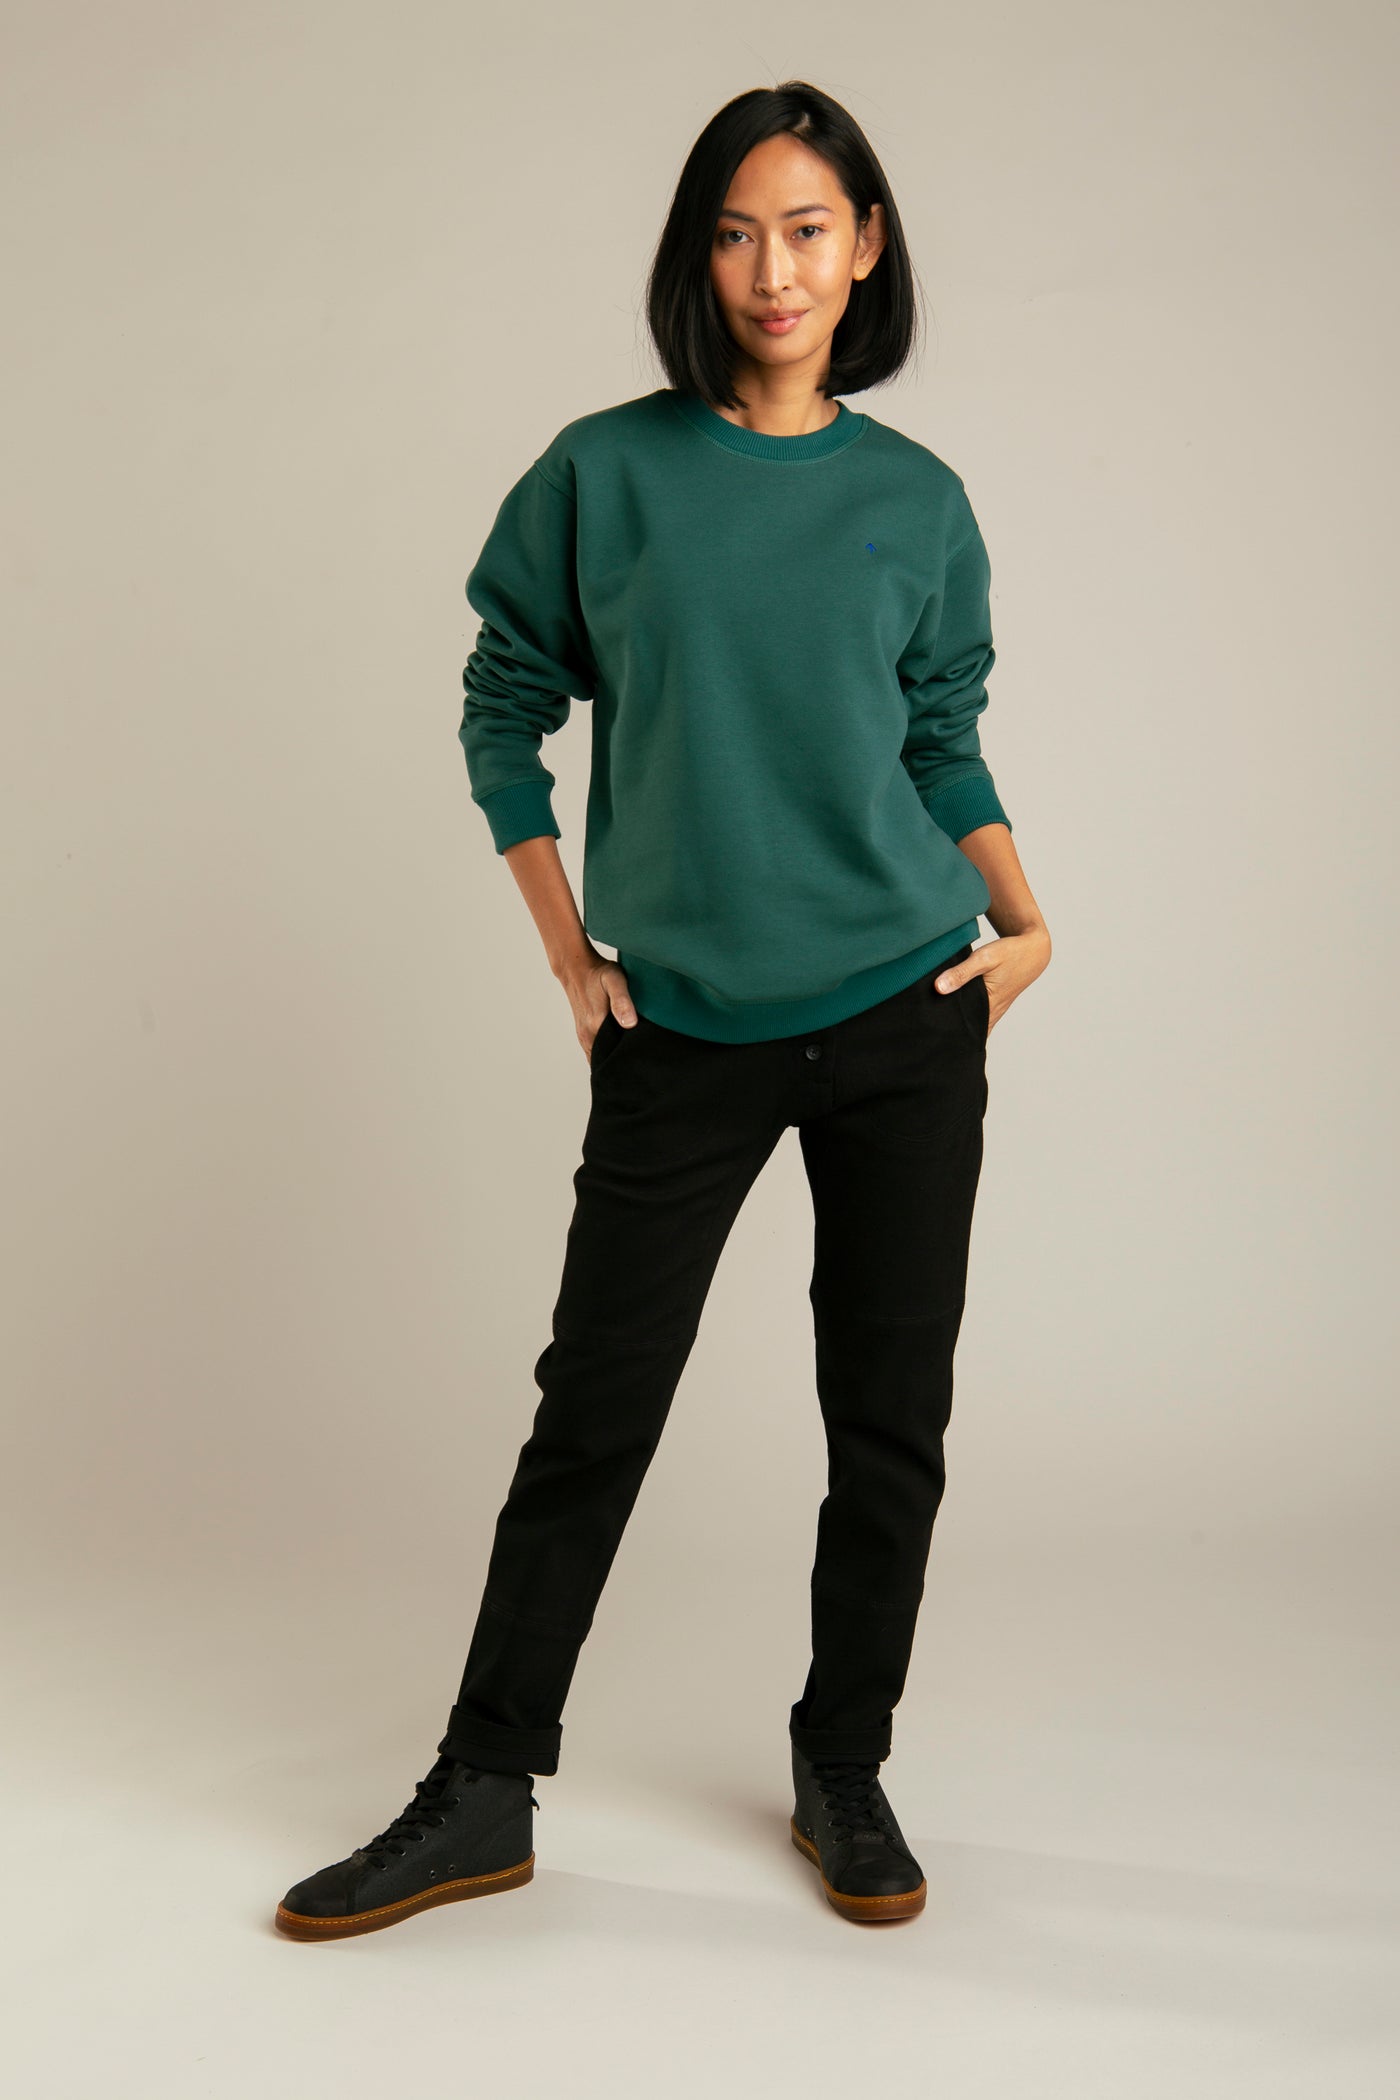 Pullover für Damen, Basic mit Pfeil-Stickerei | Grün